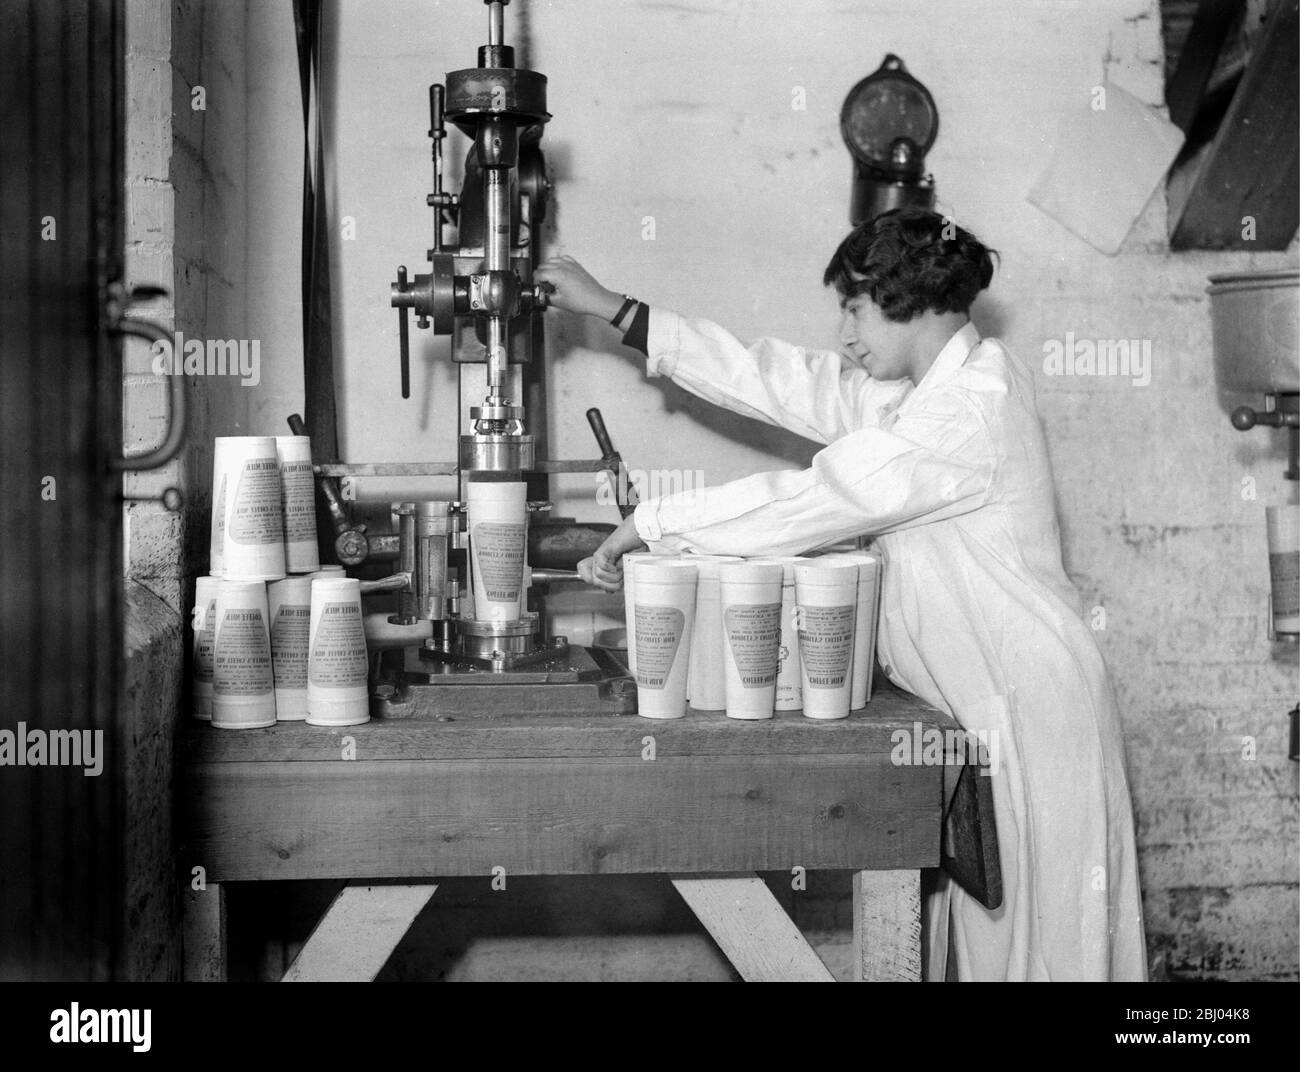 Eine neue Branche. Herr Woodley, ein Milchbauer aus Reading, hat ein neues arbeitssparendes Getränk in Form von Kaffee-Milch produziert, das er regelmäßig an die Haustür seines Kunden liefert. Die Empfänger müssen nur den Karton schütteln, um die Creme zu mischen und den Inhalt aufzuwärmen. - das lösliche Herz der Kaffeebohne wird verwendet, aus dem alle holzigen Abfälle beseitigt wurden. - 1. Februar 1932 Stockfoto